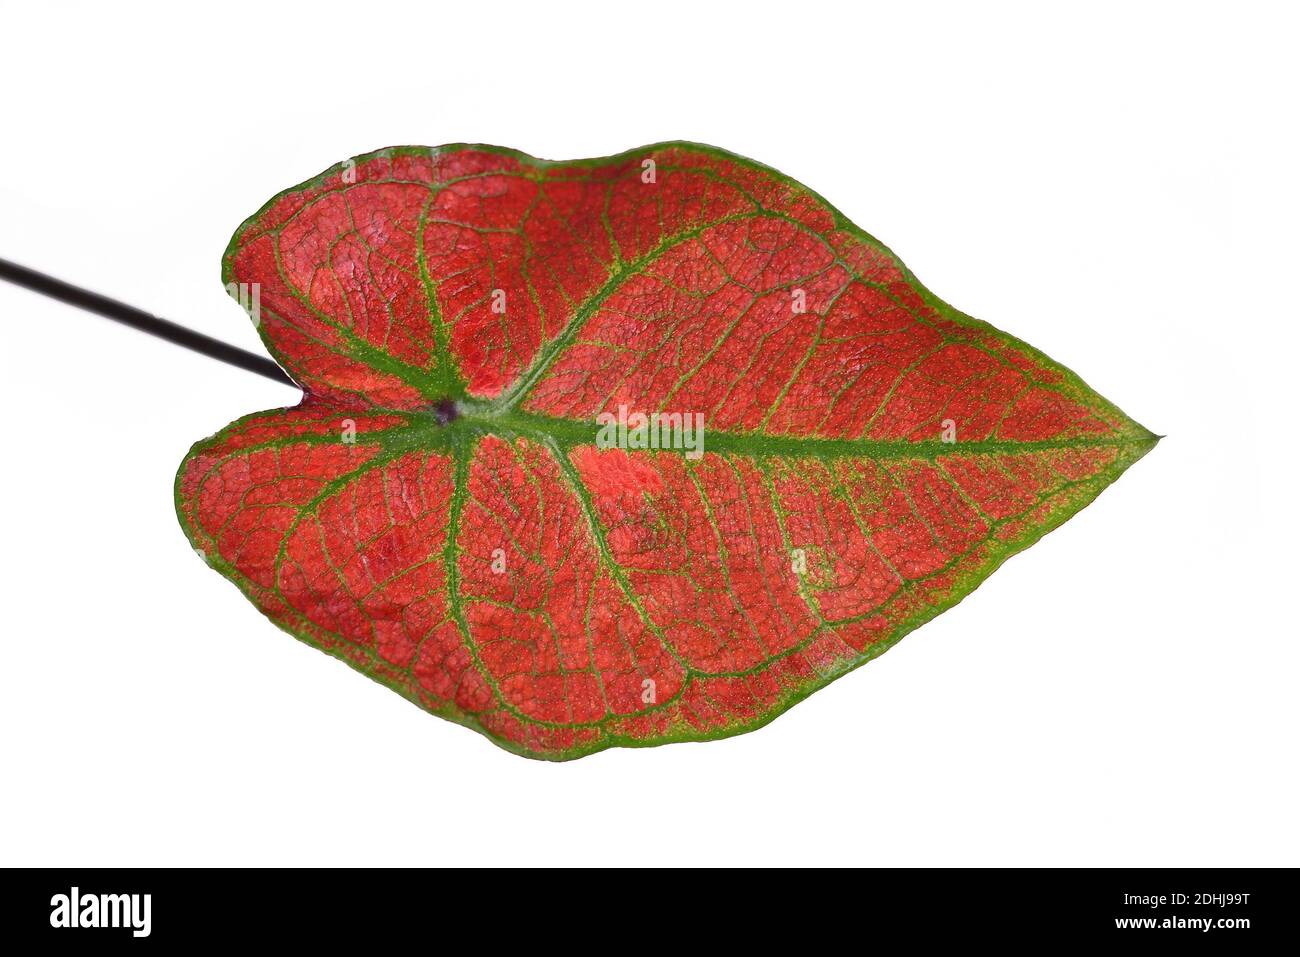 Nahaufnahme des Blattes der exotischen 'Caladium Thai Danasty' Zimmerpflanze Mit roten Blättern und grünen Adern isoliert auf weißem Hintergrund Stockfoto